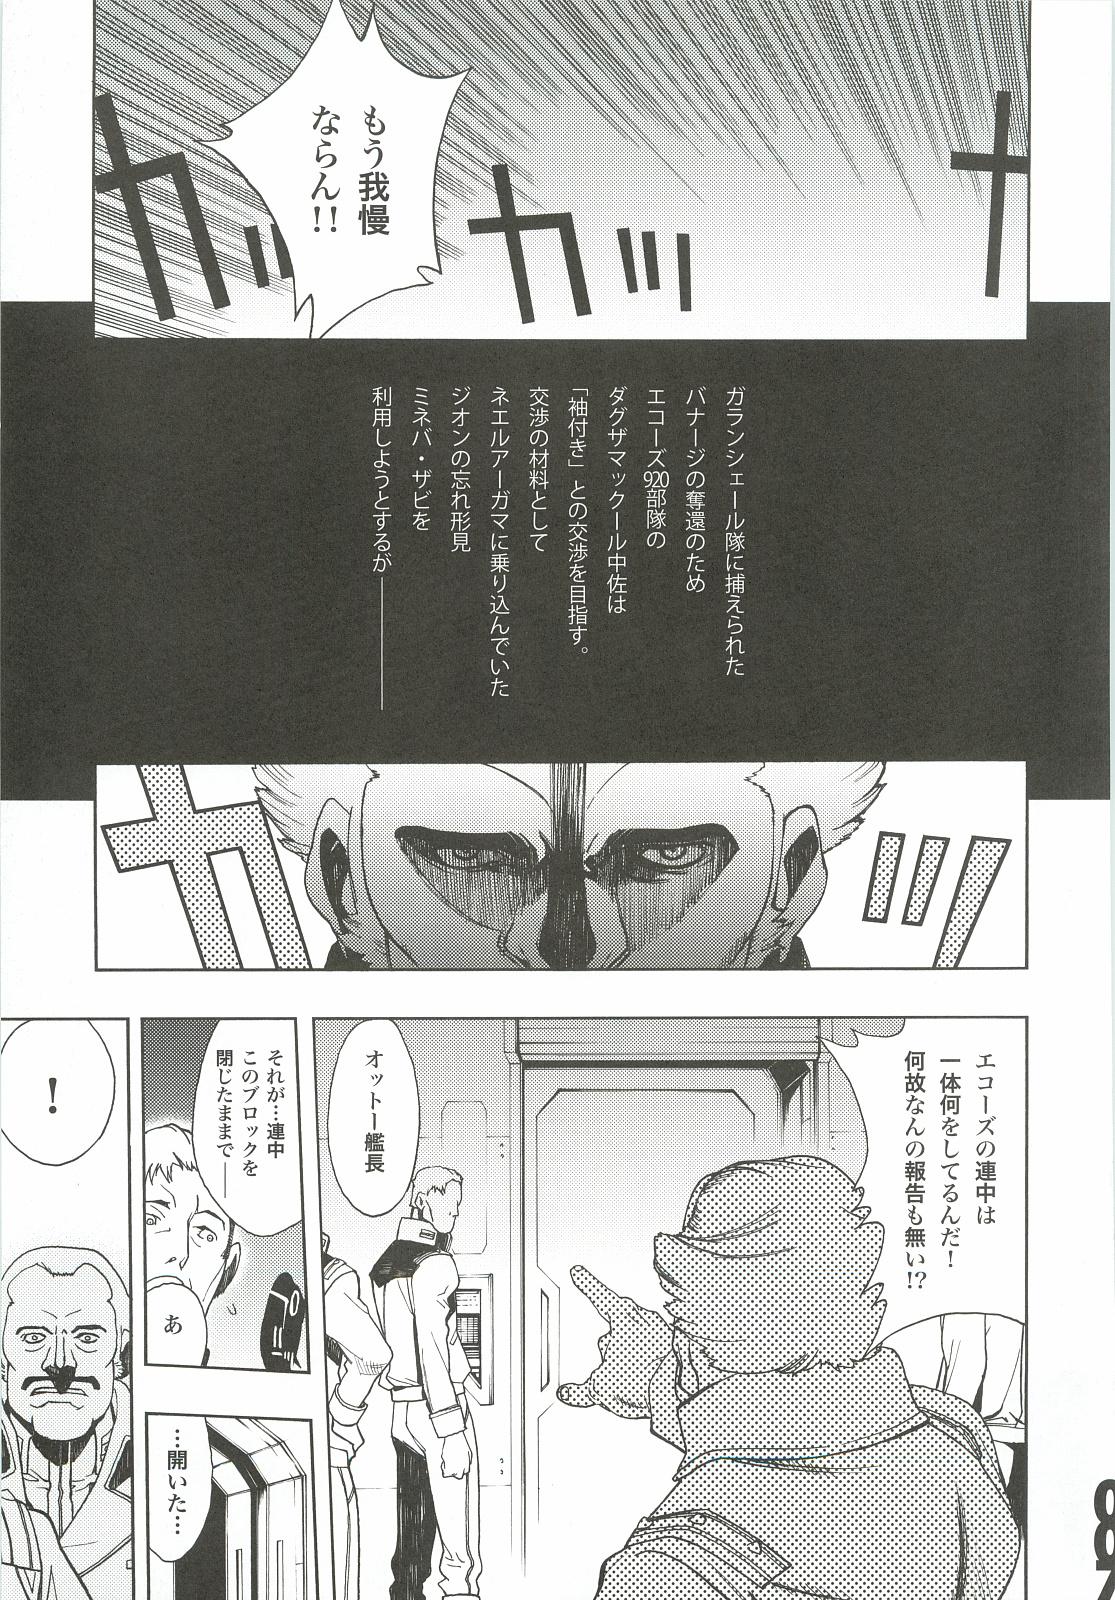 Morrita Ghost - Gundam unicorn Vip - Page 6